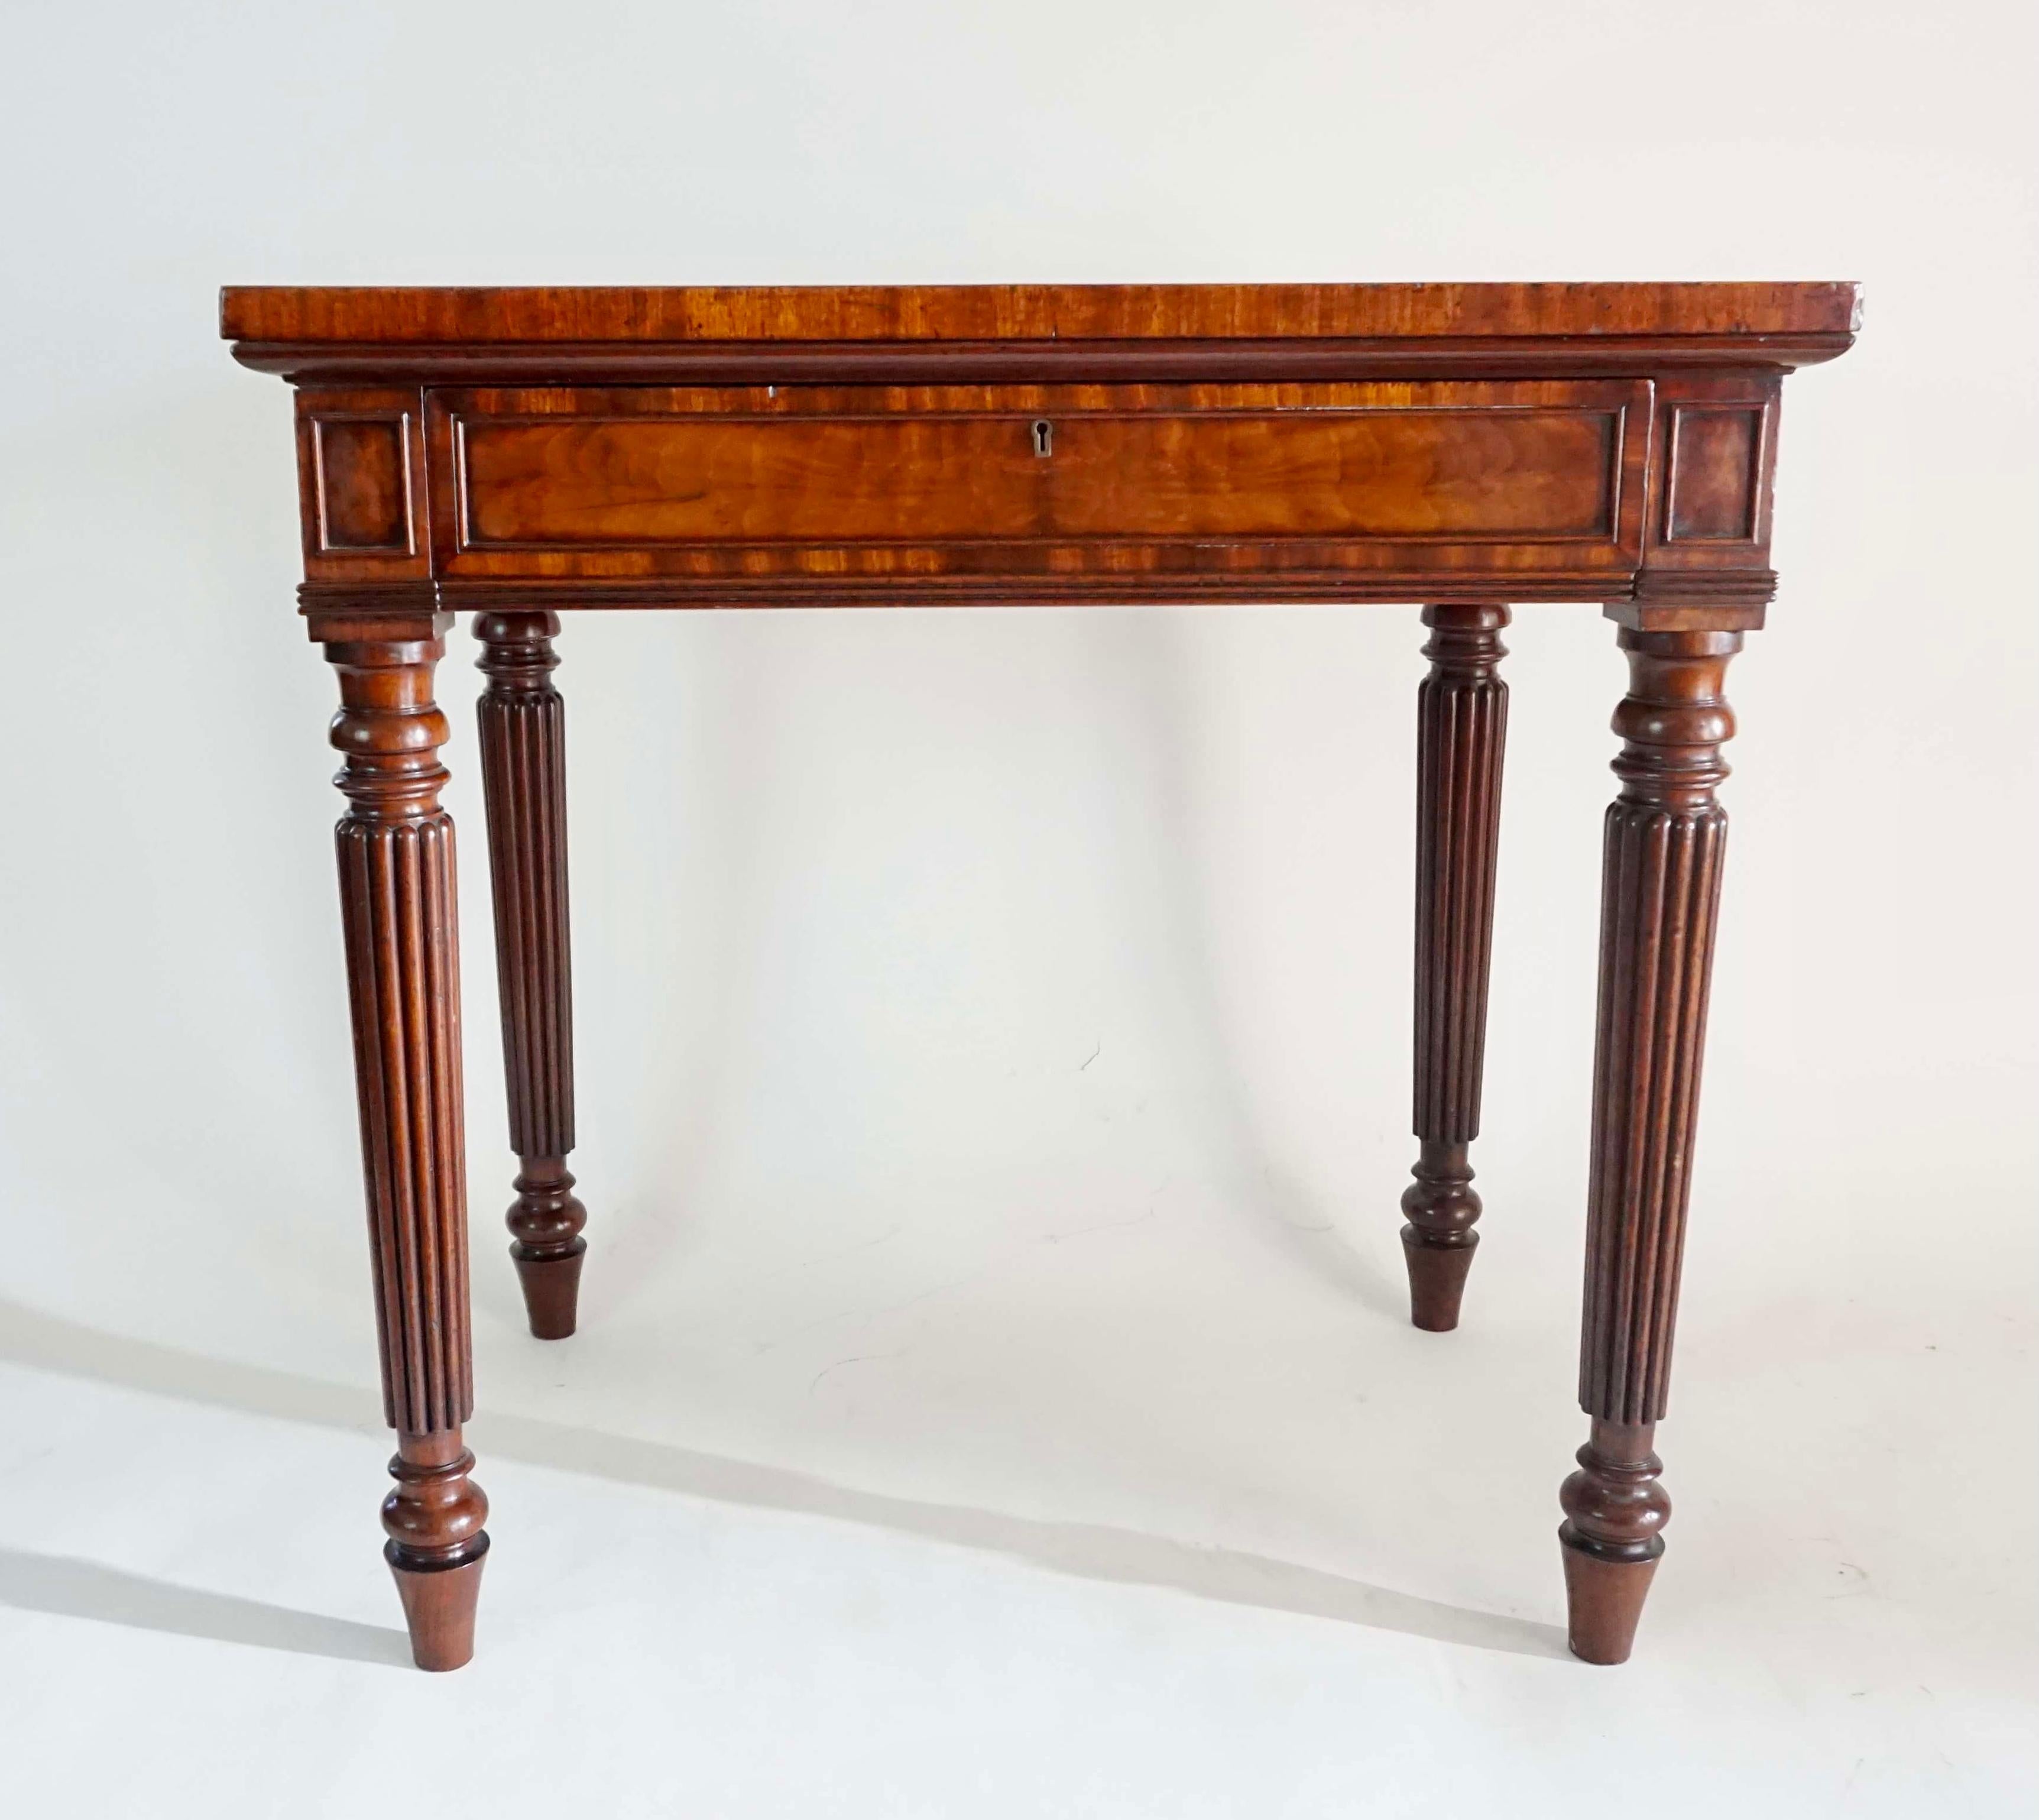 Ein äußerst feiner Beistell- oder Schreibtisch um 1820 von der legendären englischen Tischlerei Gillows aus Lancaster und London in rechteckiger Form mit einer exquisit gemaserten massiven 